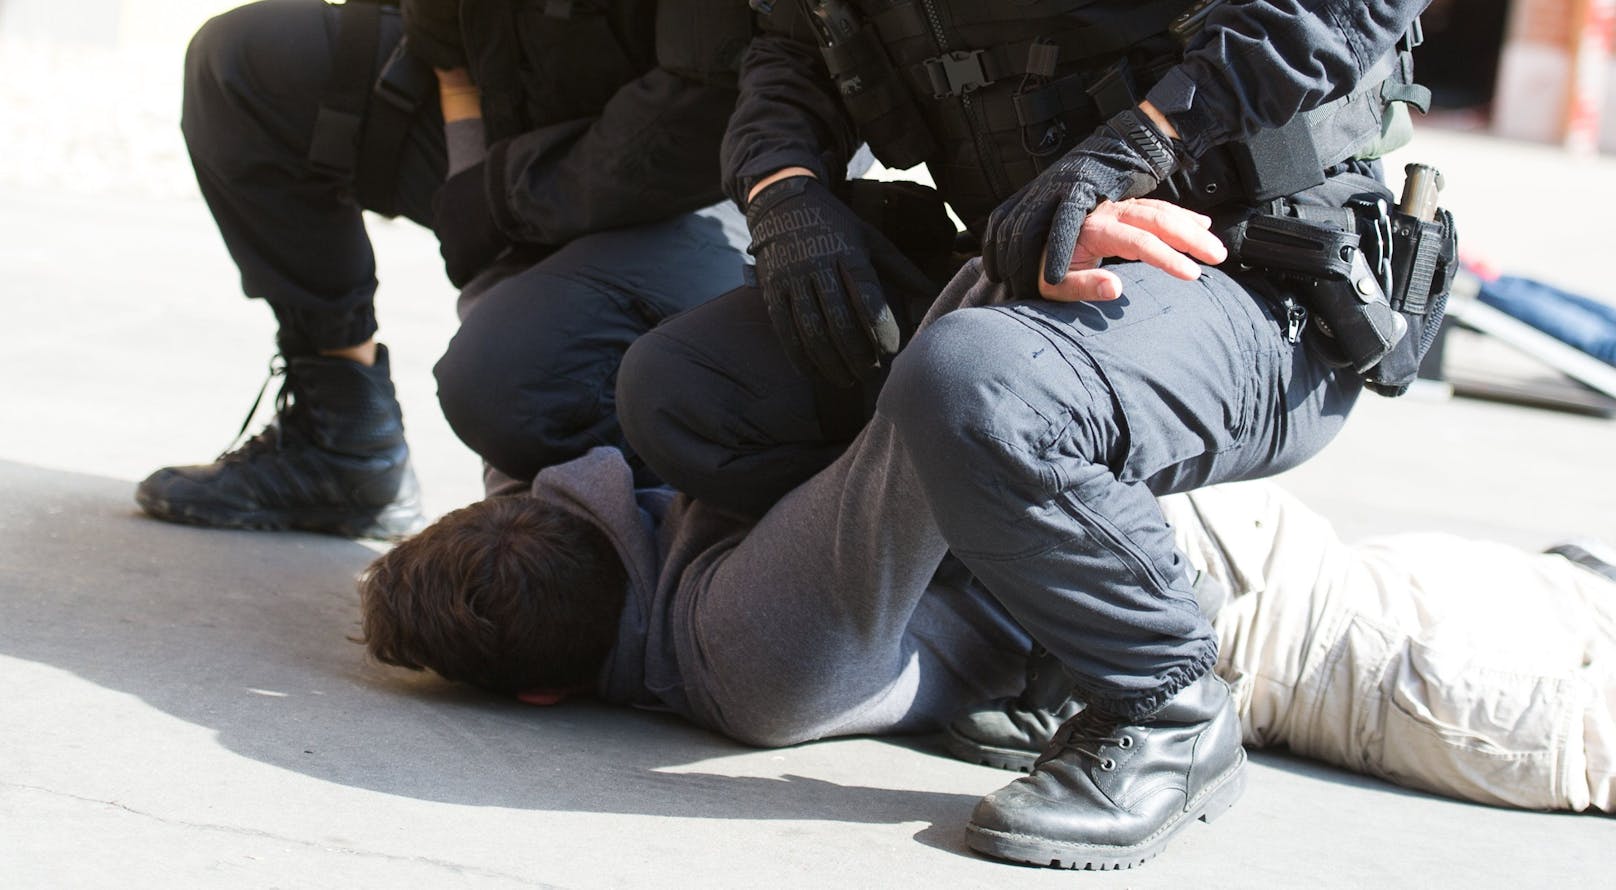 Während der Festnahme musste der 21-Jährige von Polizisten auf dem Boden fixiert werden. (Symbolbild)